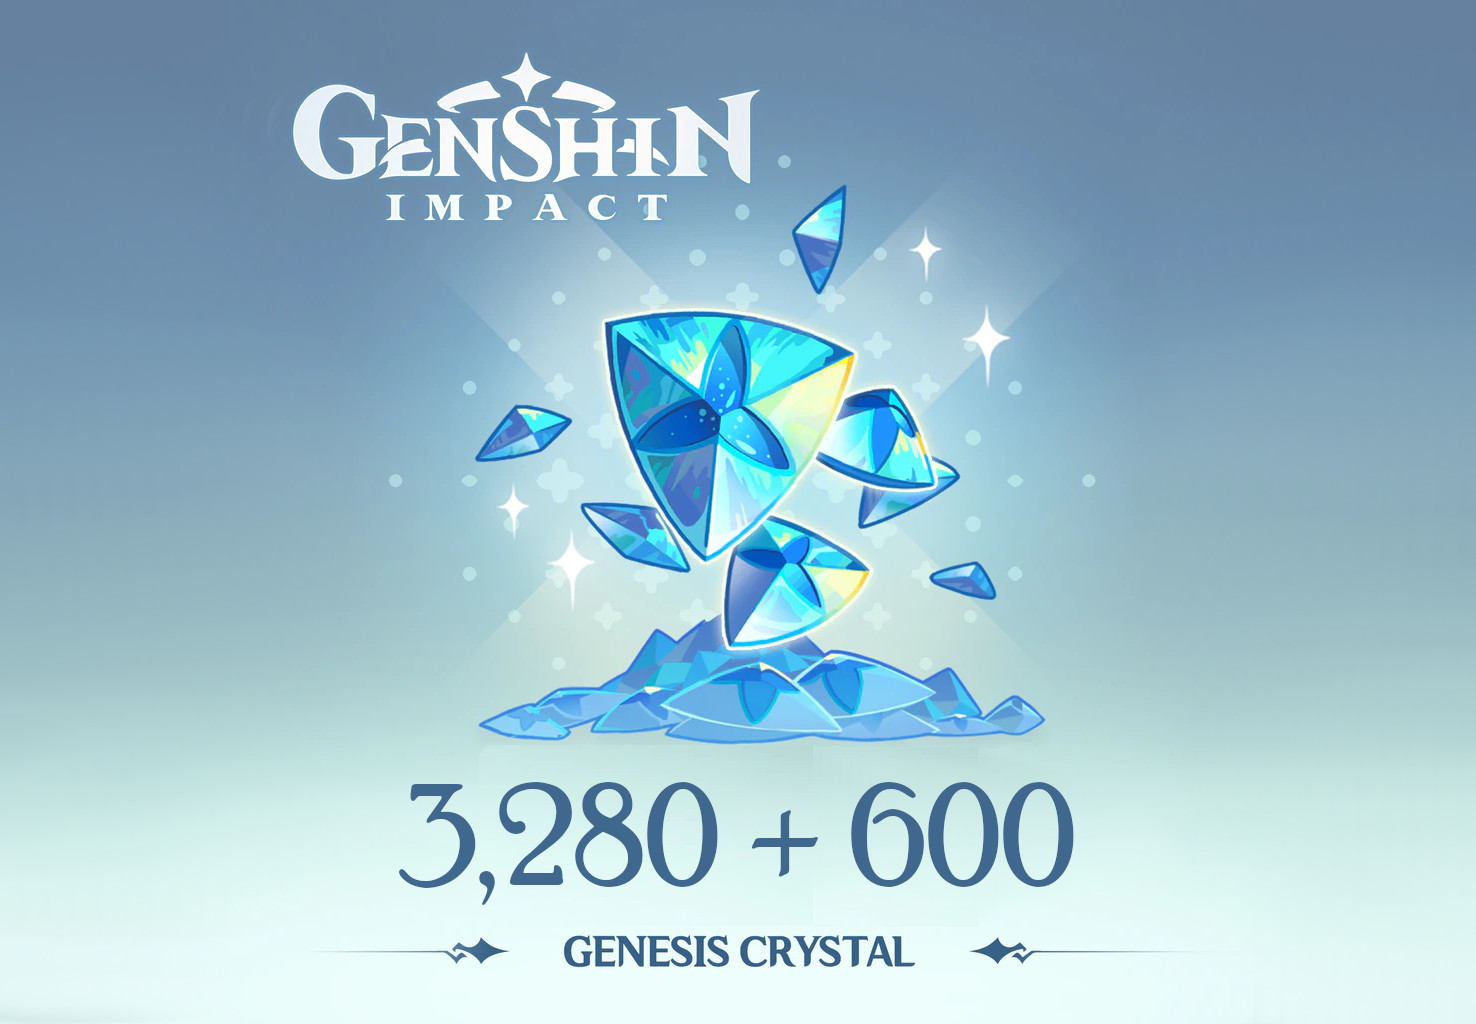 Genshin Impact - 3,280 + 600 Genesis Crystals Reidos Voucher 53.39$